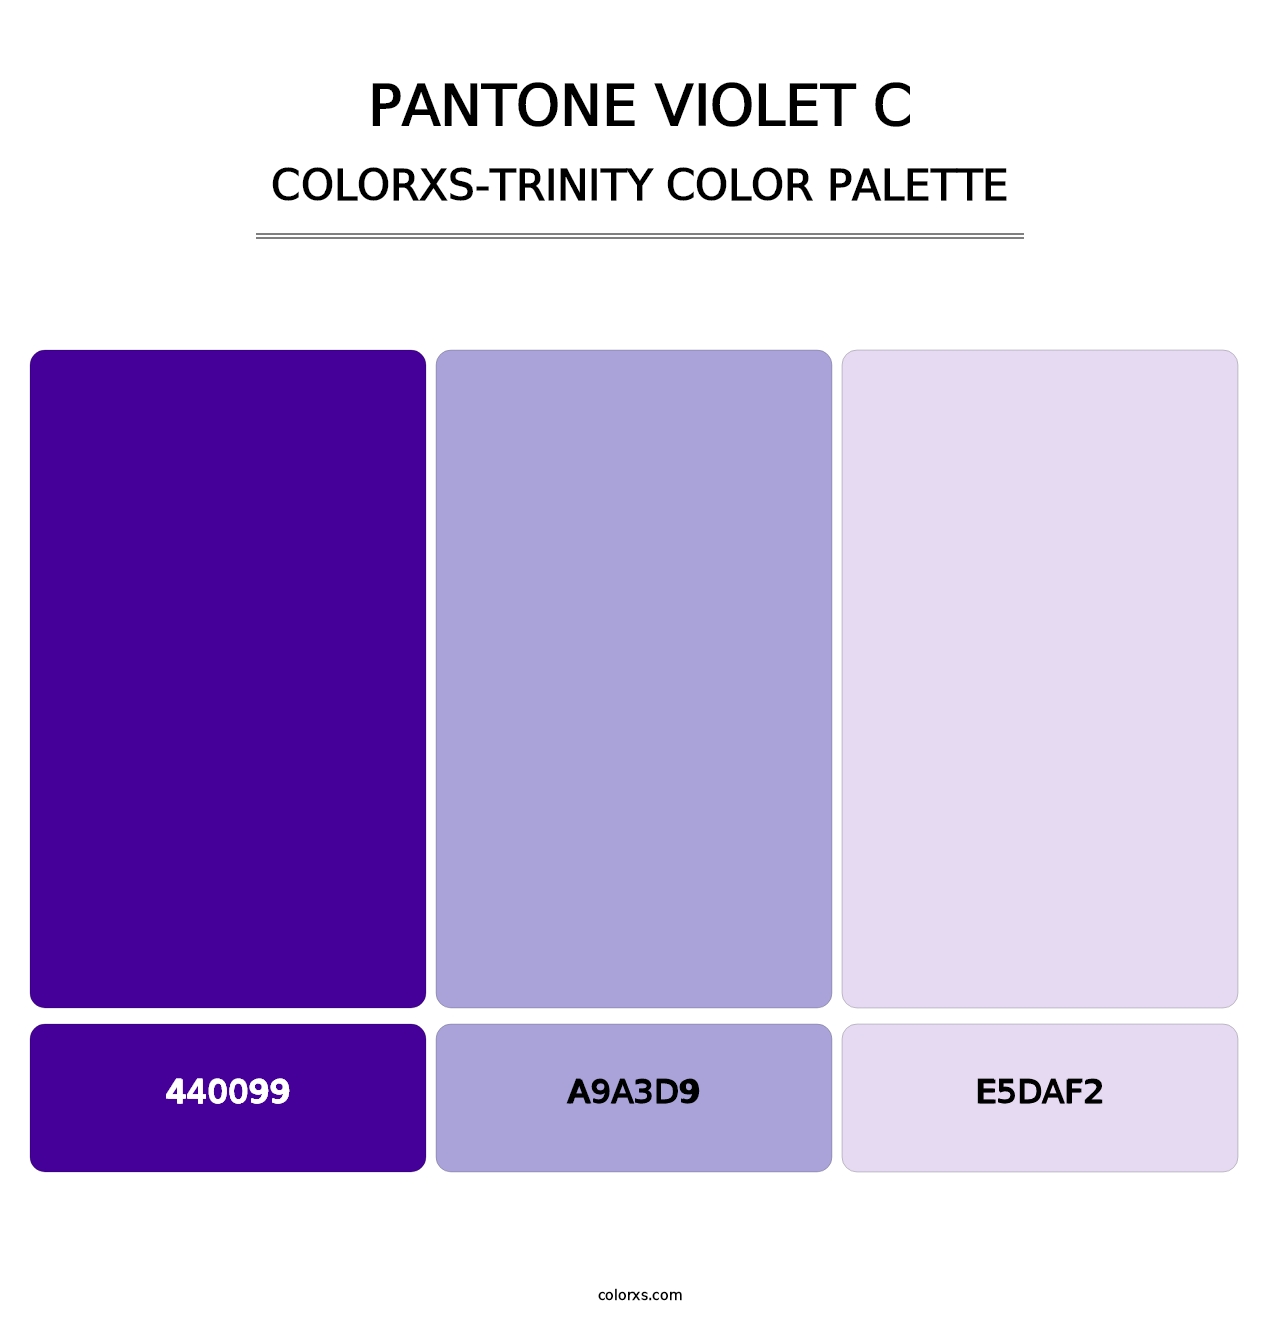 PANTONE Violet C - Colorxs Trinity Palette